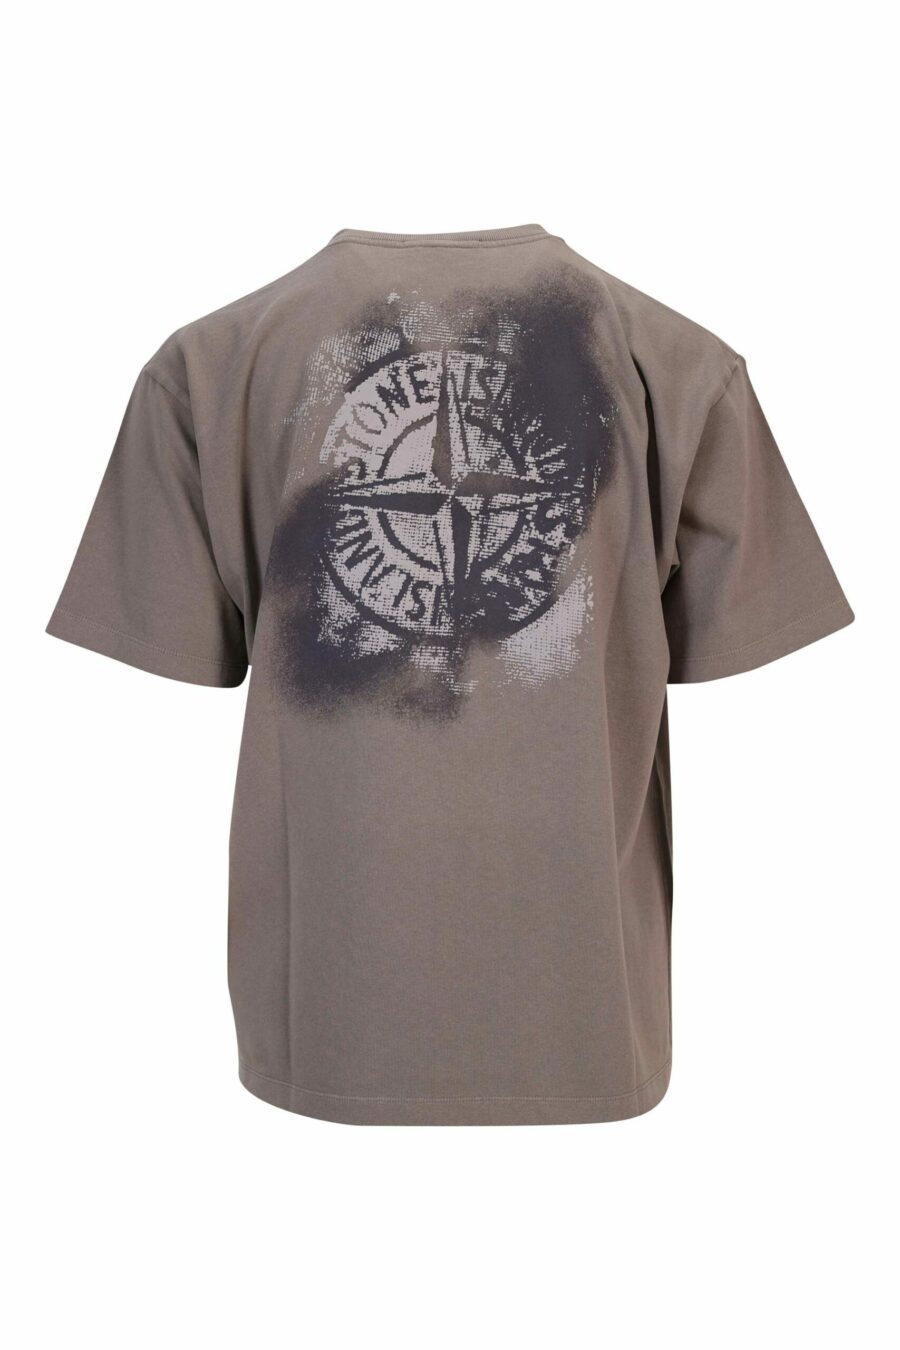 T-shirt gris avec petit logo noir - 8052572912771 1 scaled